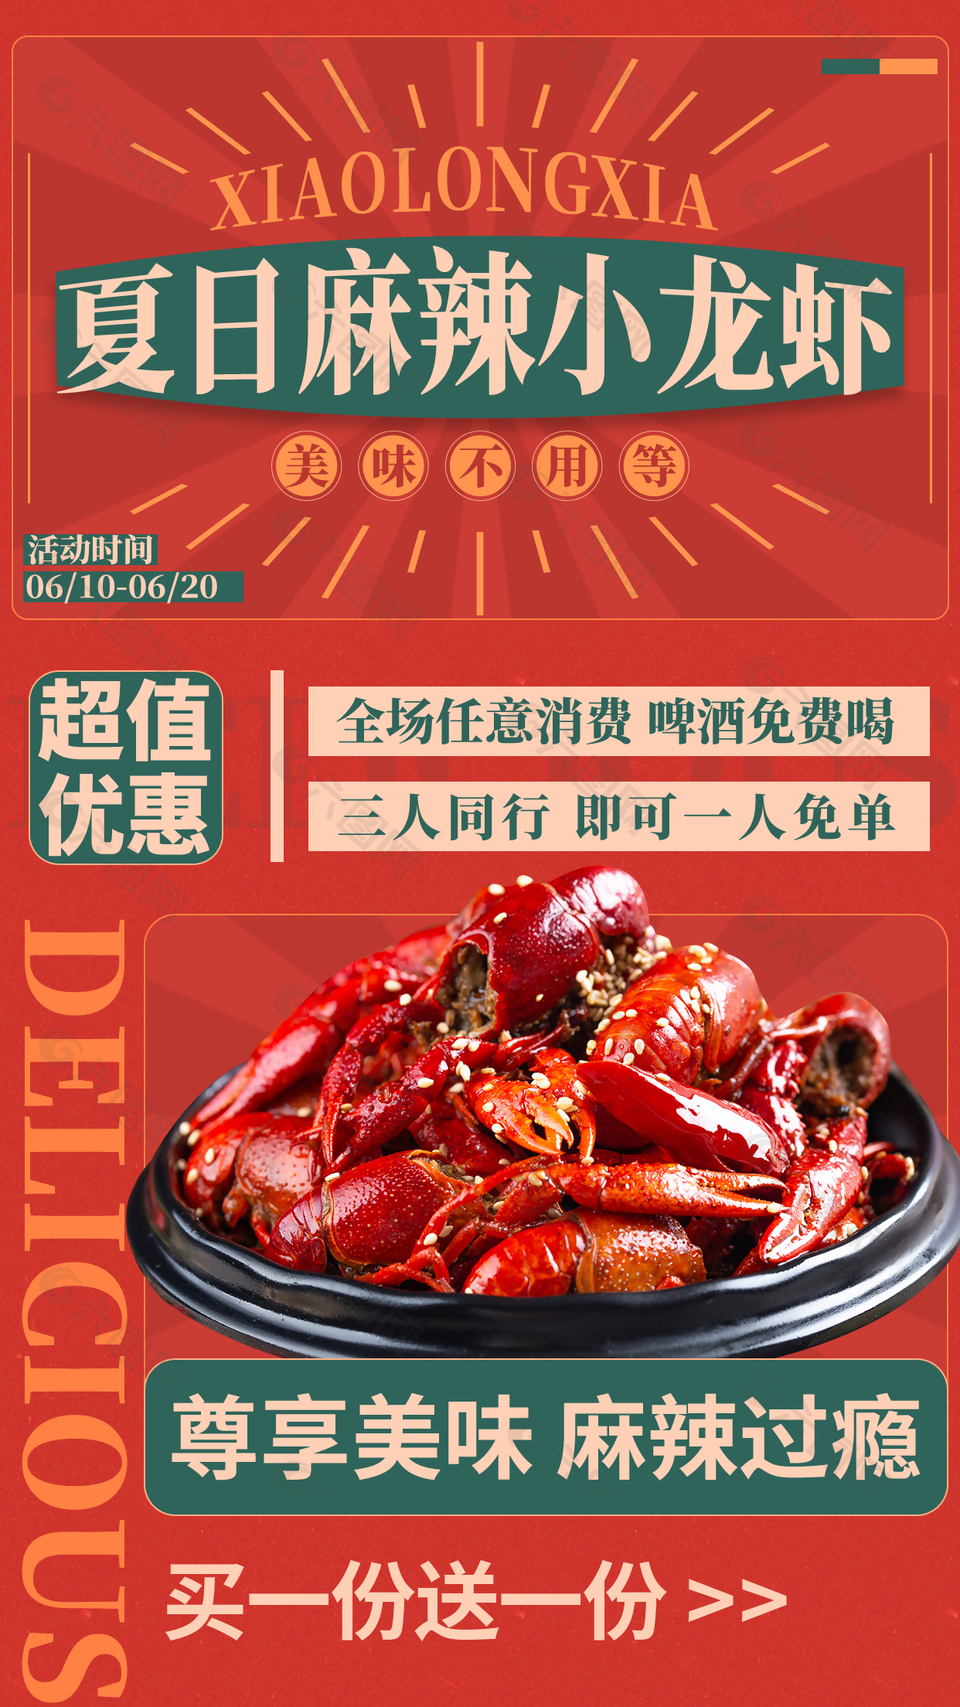 夏日麻辣小龙虾美味不用等主题海报